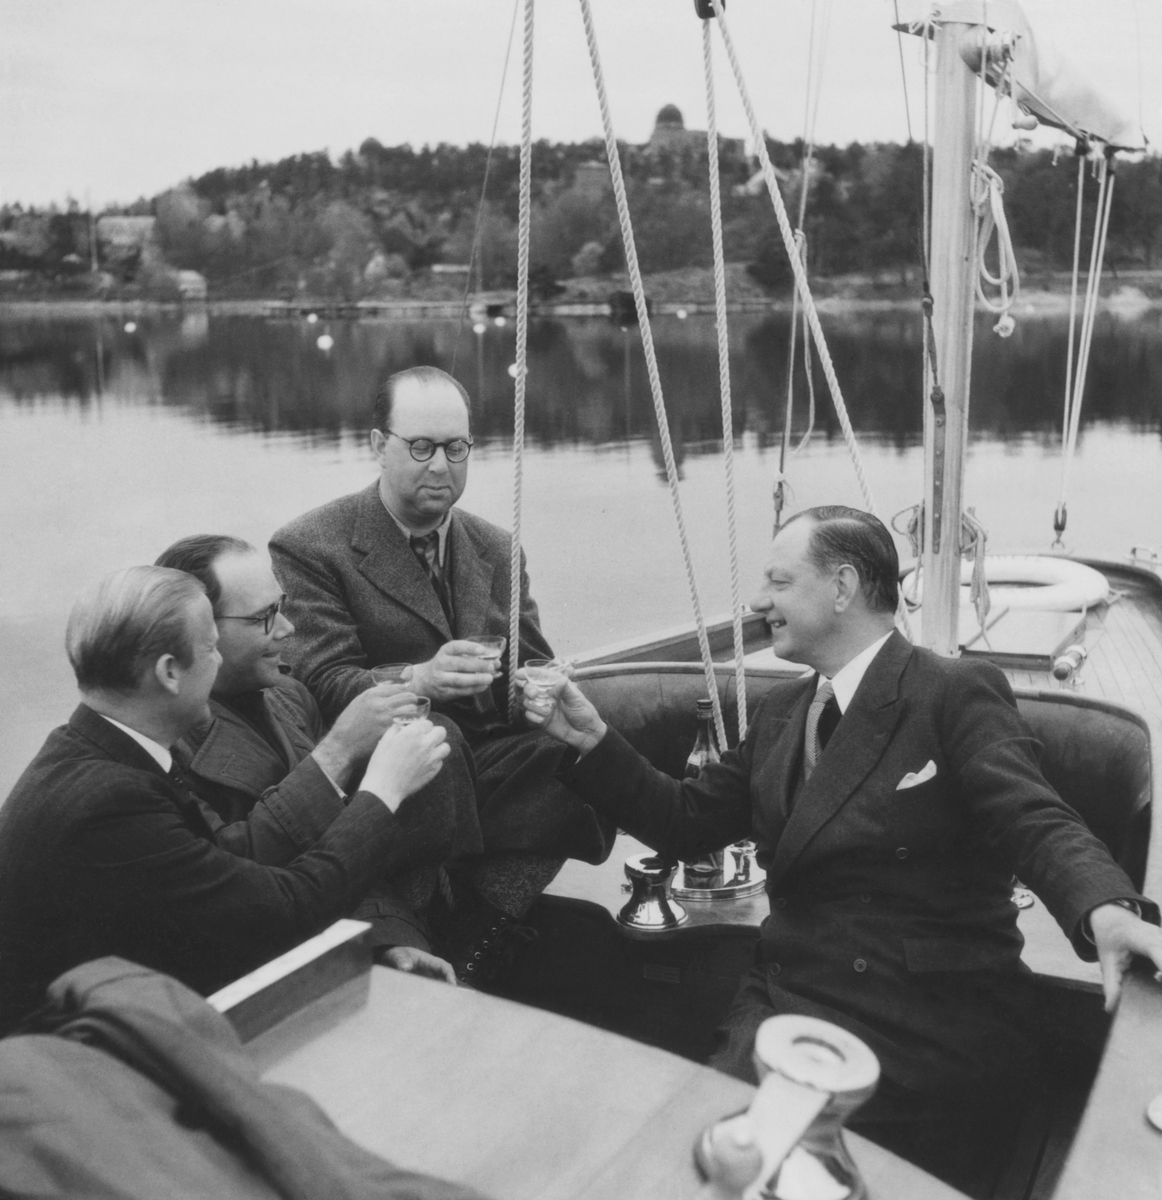 Gösta Åhlén tredje personen från vänster, Roy Hähnel längst till höger i segelbåt med en flaska konjak.